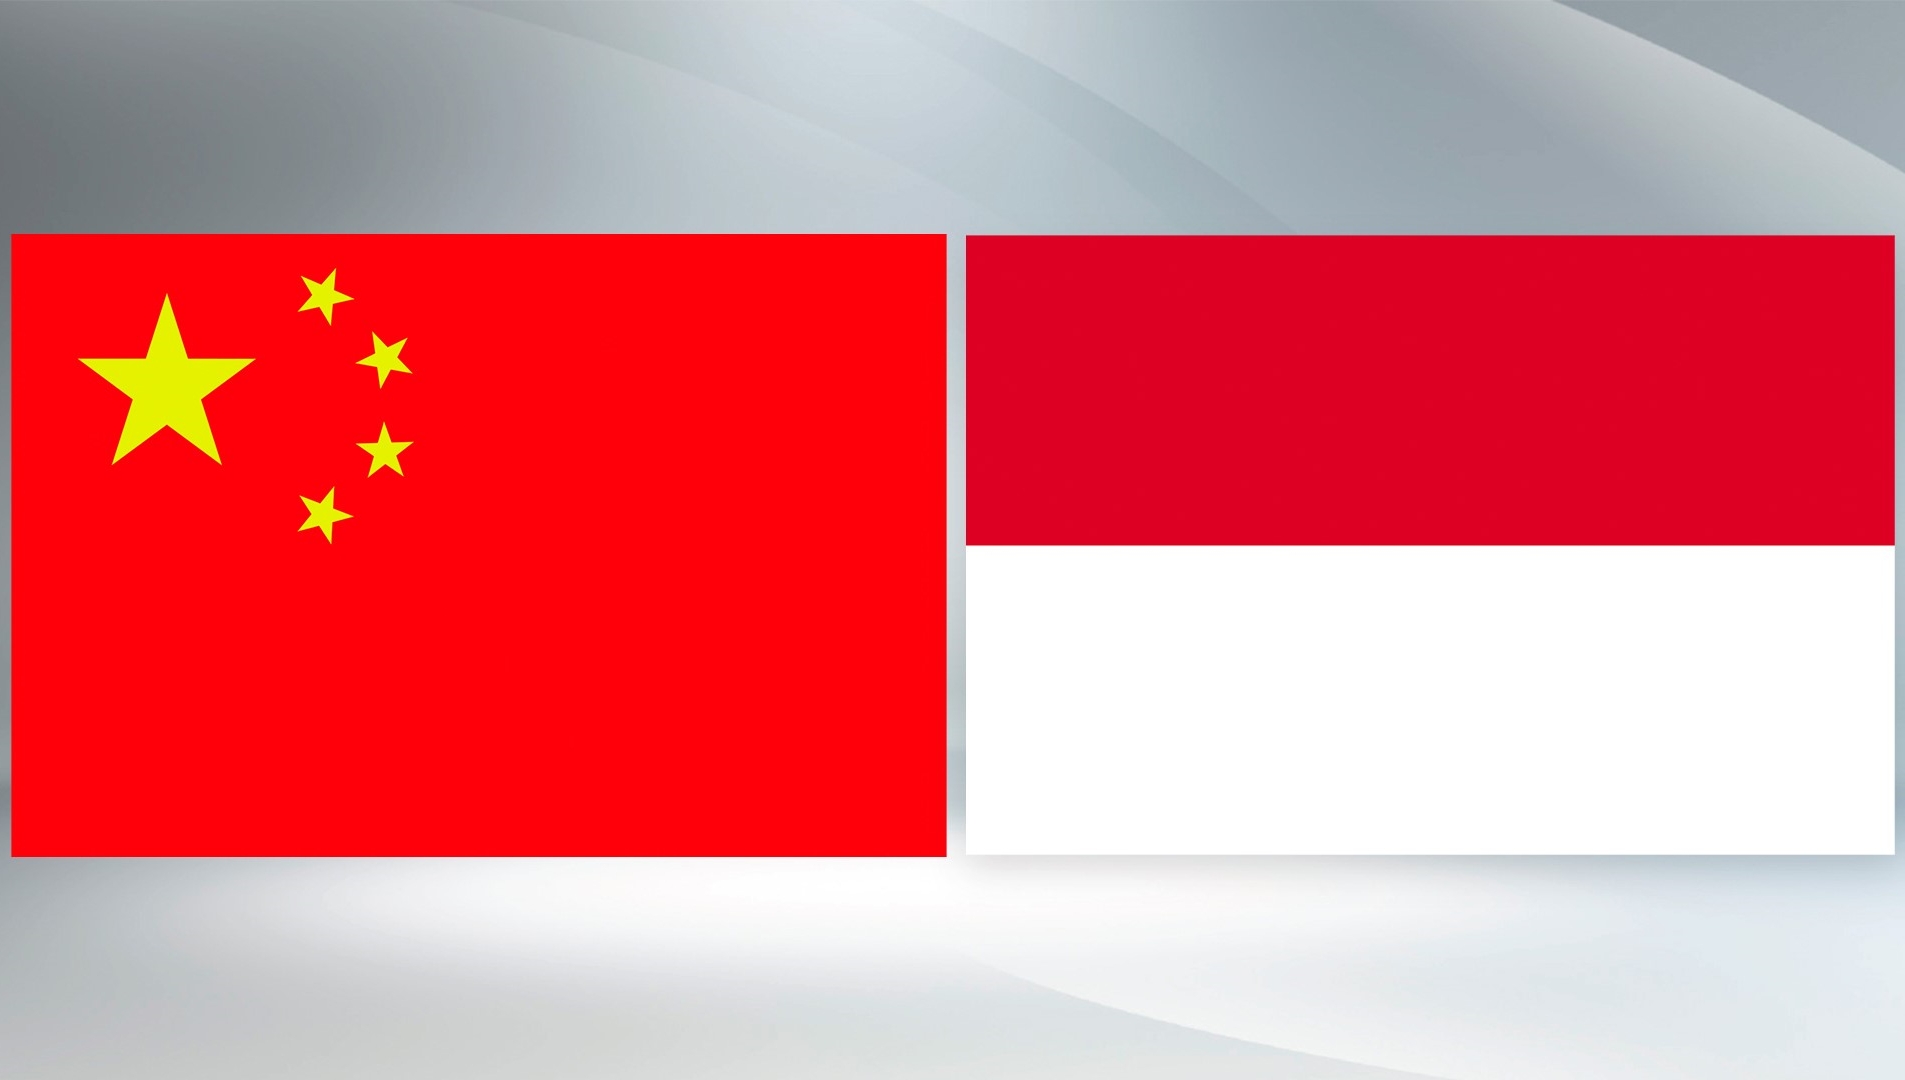 Xi congratulates Prabowo Subianto on election as Indonesian president